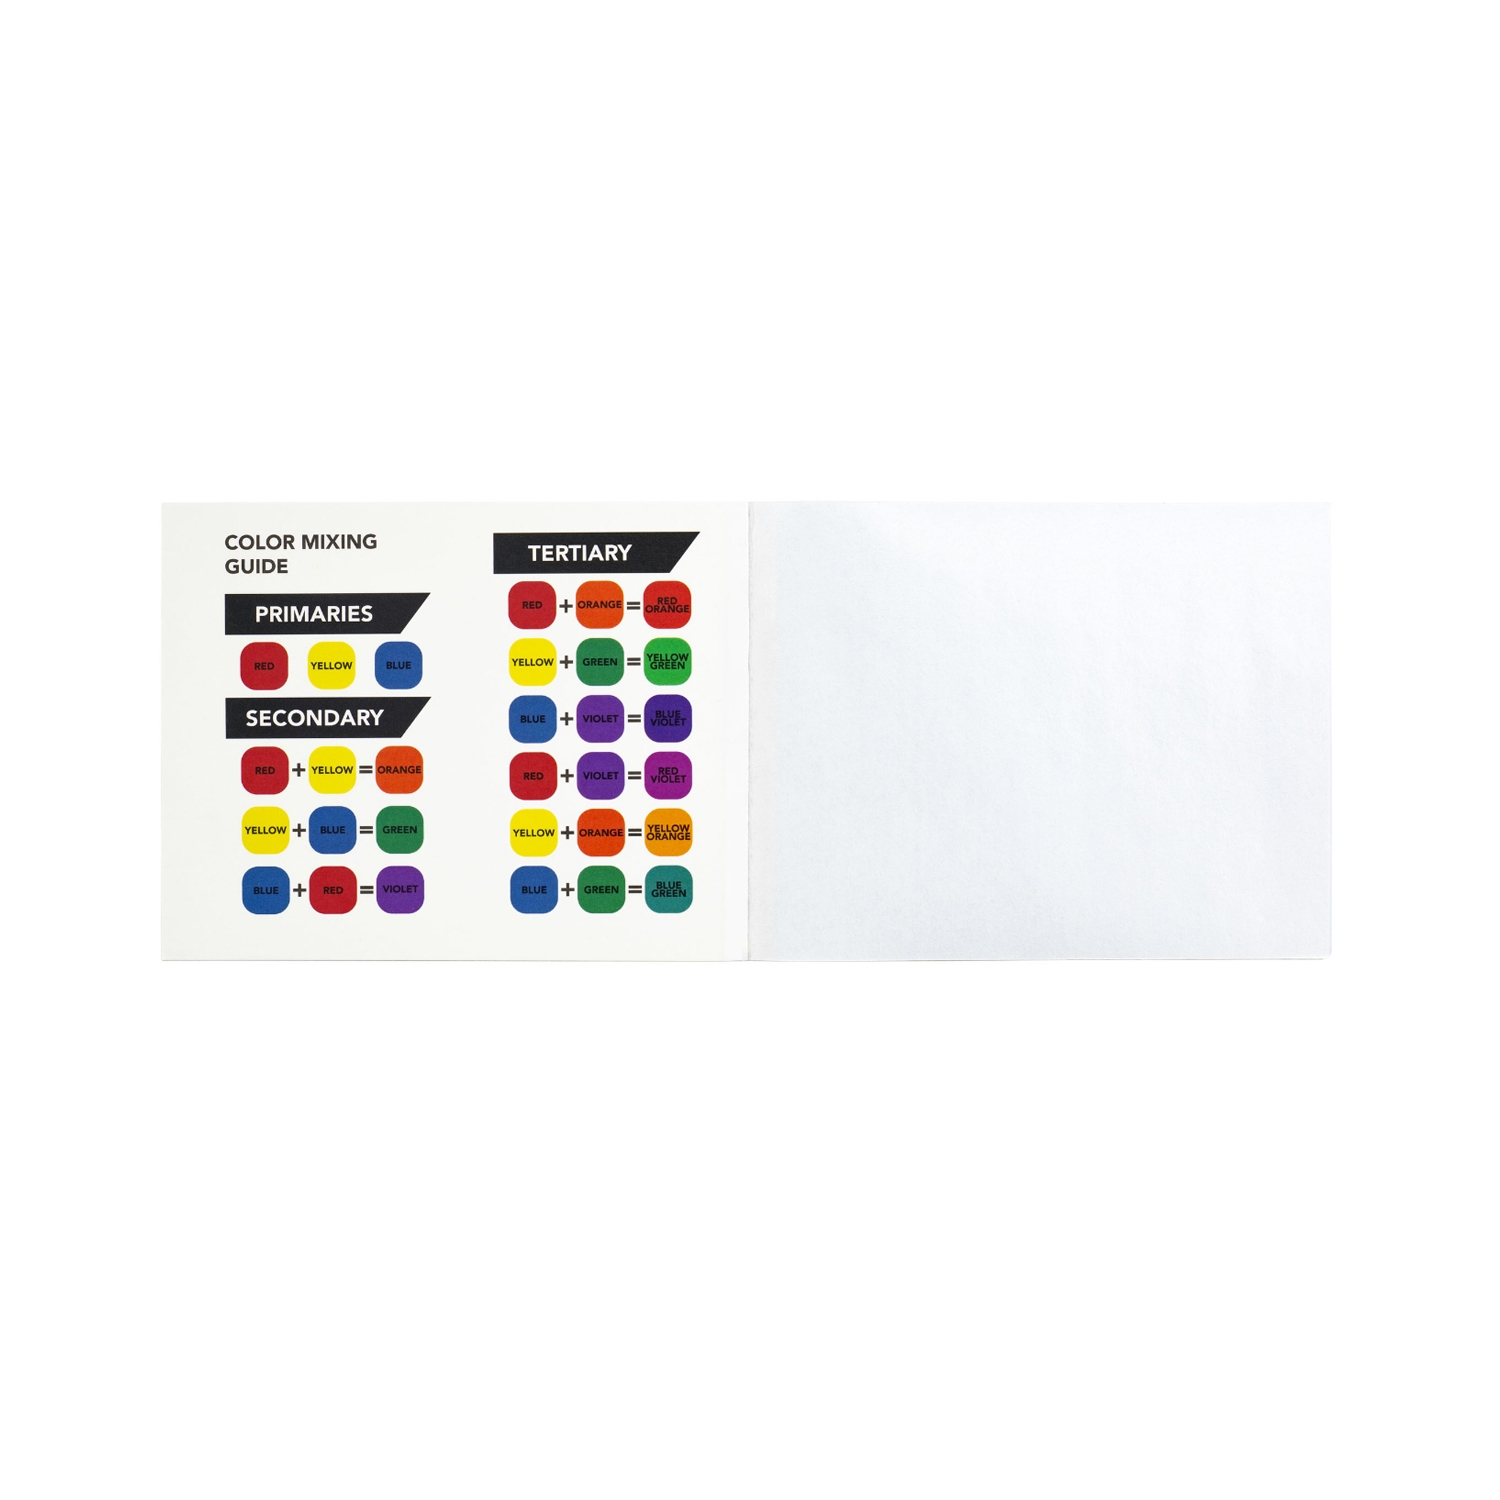 SUVA Beauty Mixology Wax Palette Paper